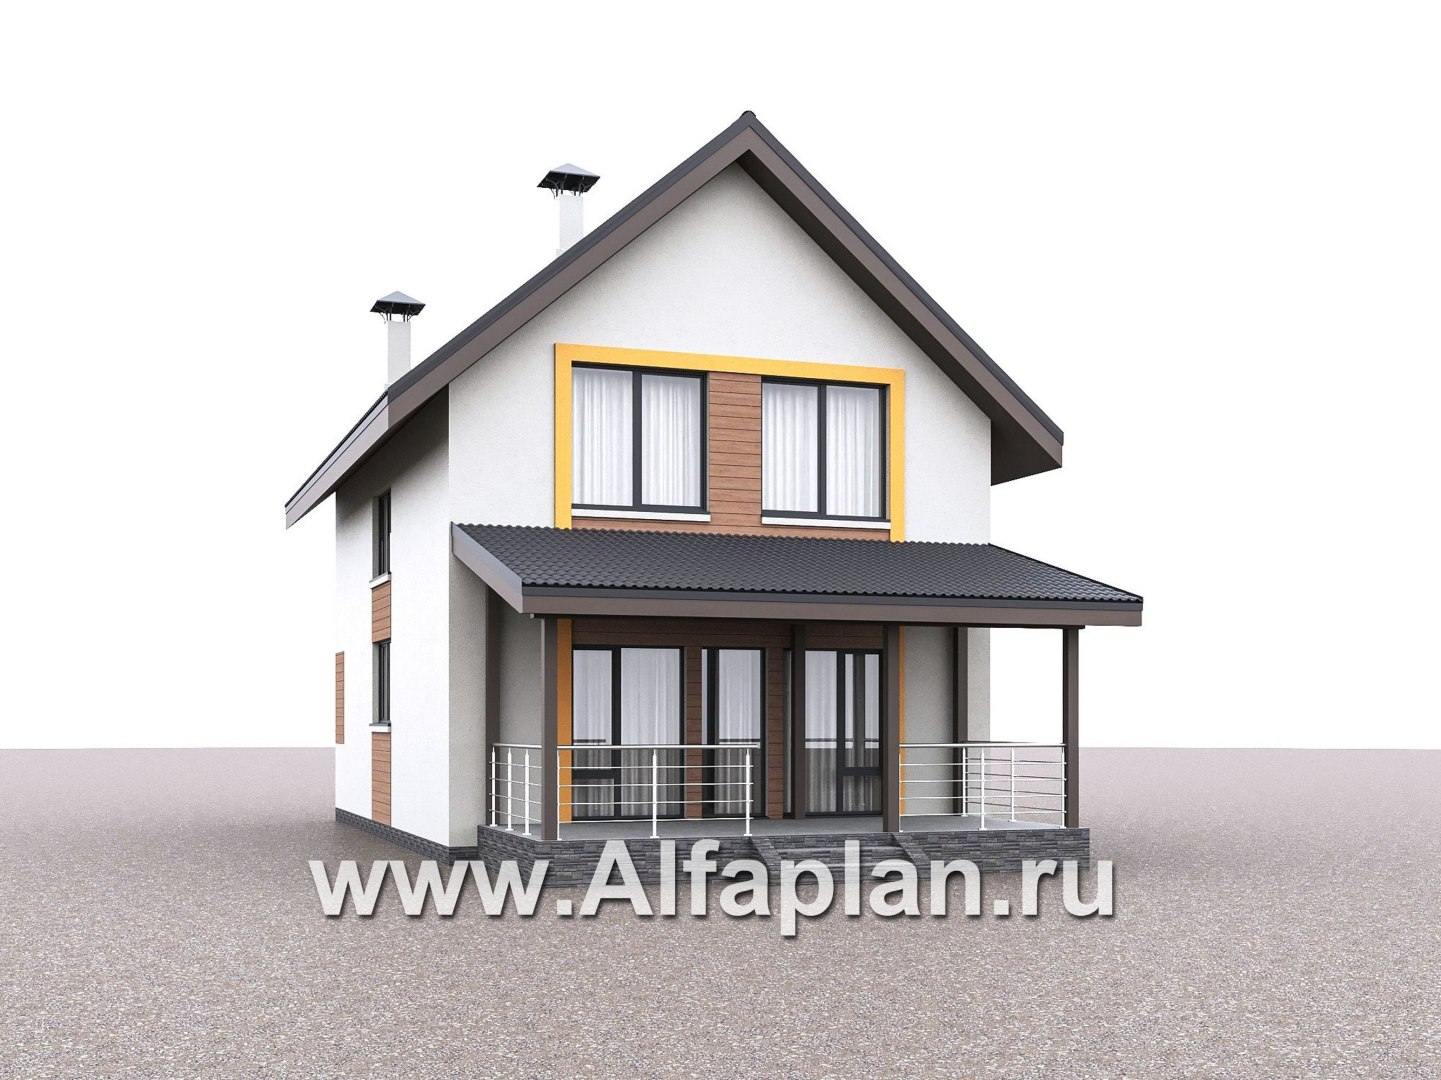 Проекты домов Альфаплан - "Викинг" - проект дома, 2 этажа, с сауной и с террасой, в скандинавском стиле - дополнительное изображение №2